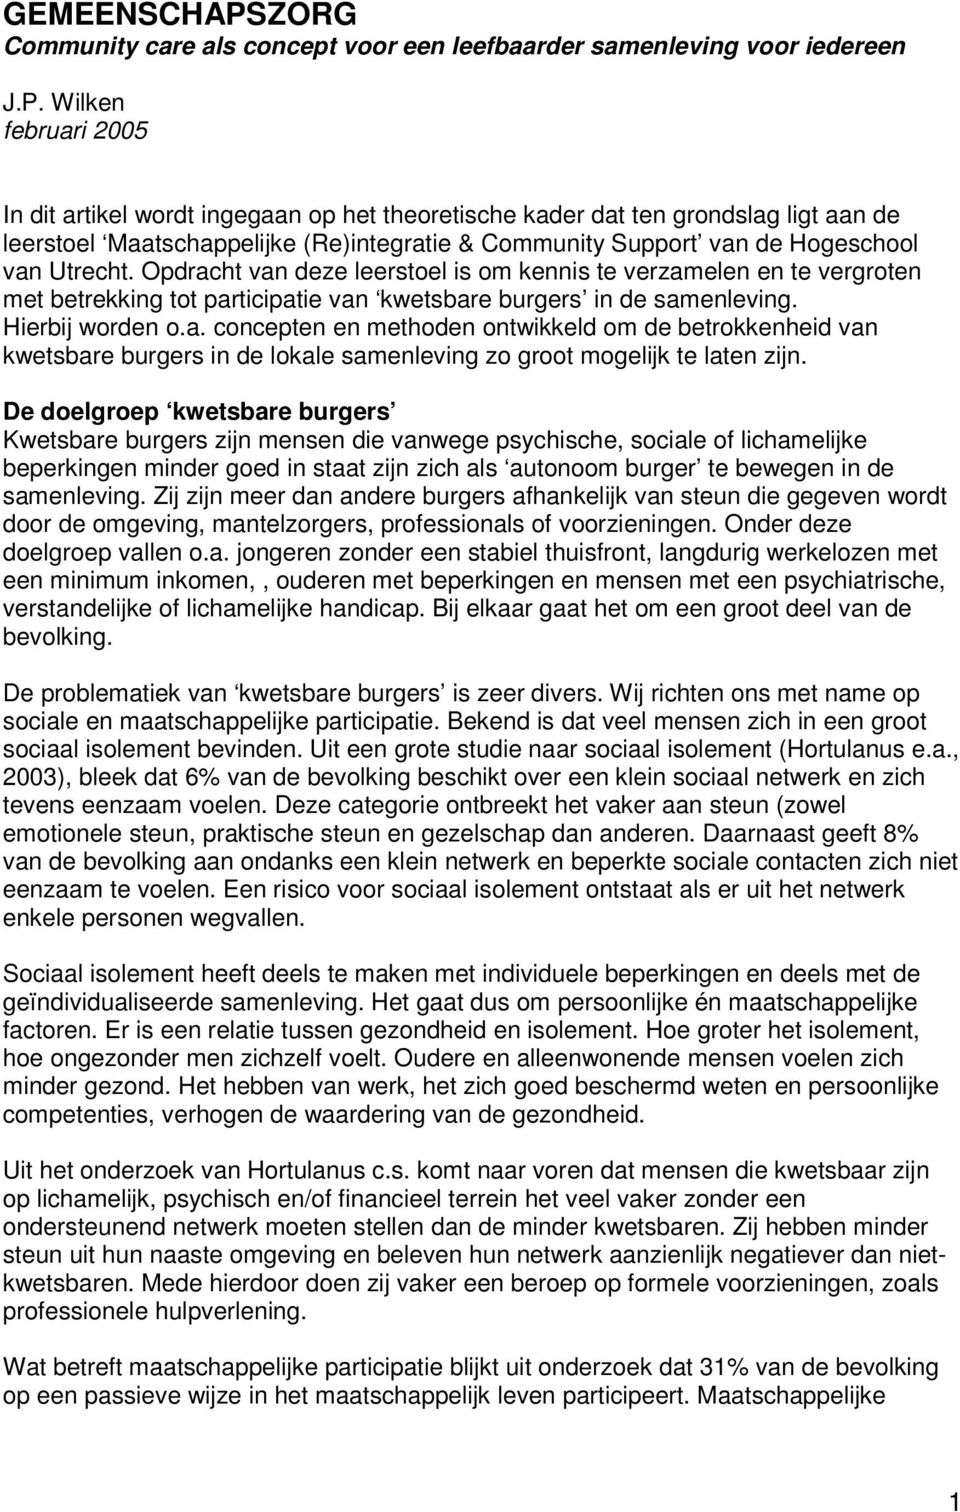 Wilken februari 2005 In dit artikel wordt ingegaan op het theoretische kader dat ten grondslag ligt aan de leerstoel Maatschappelijke (Re)integratie & Community Support van de Hogeschool van Utrecht.